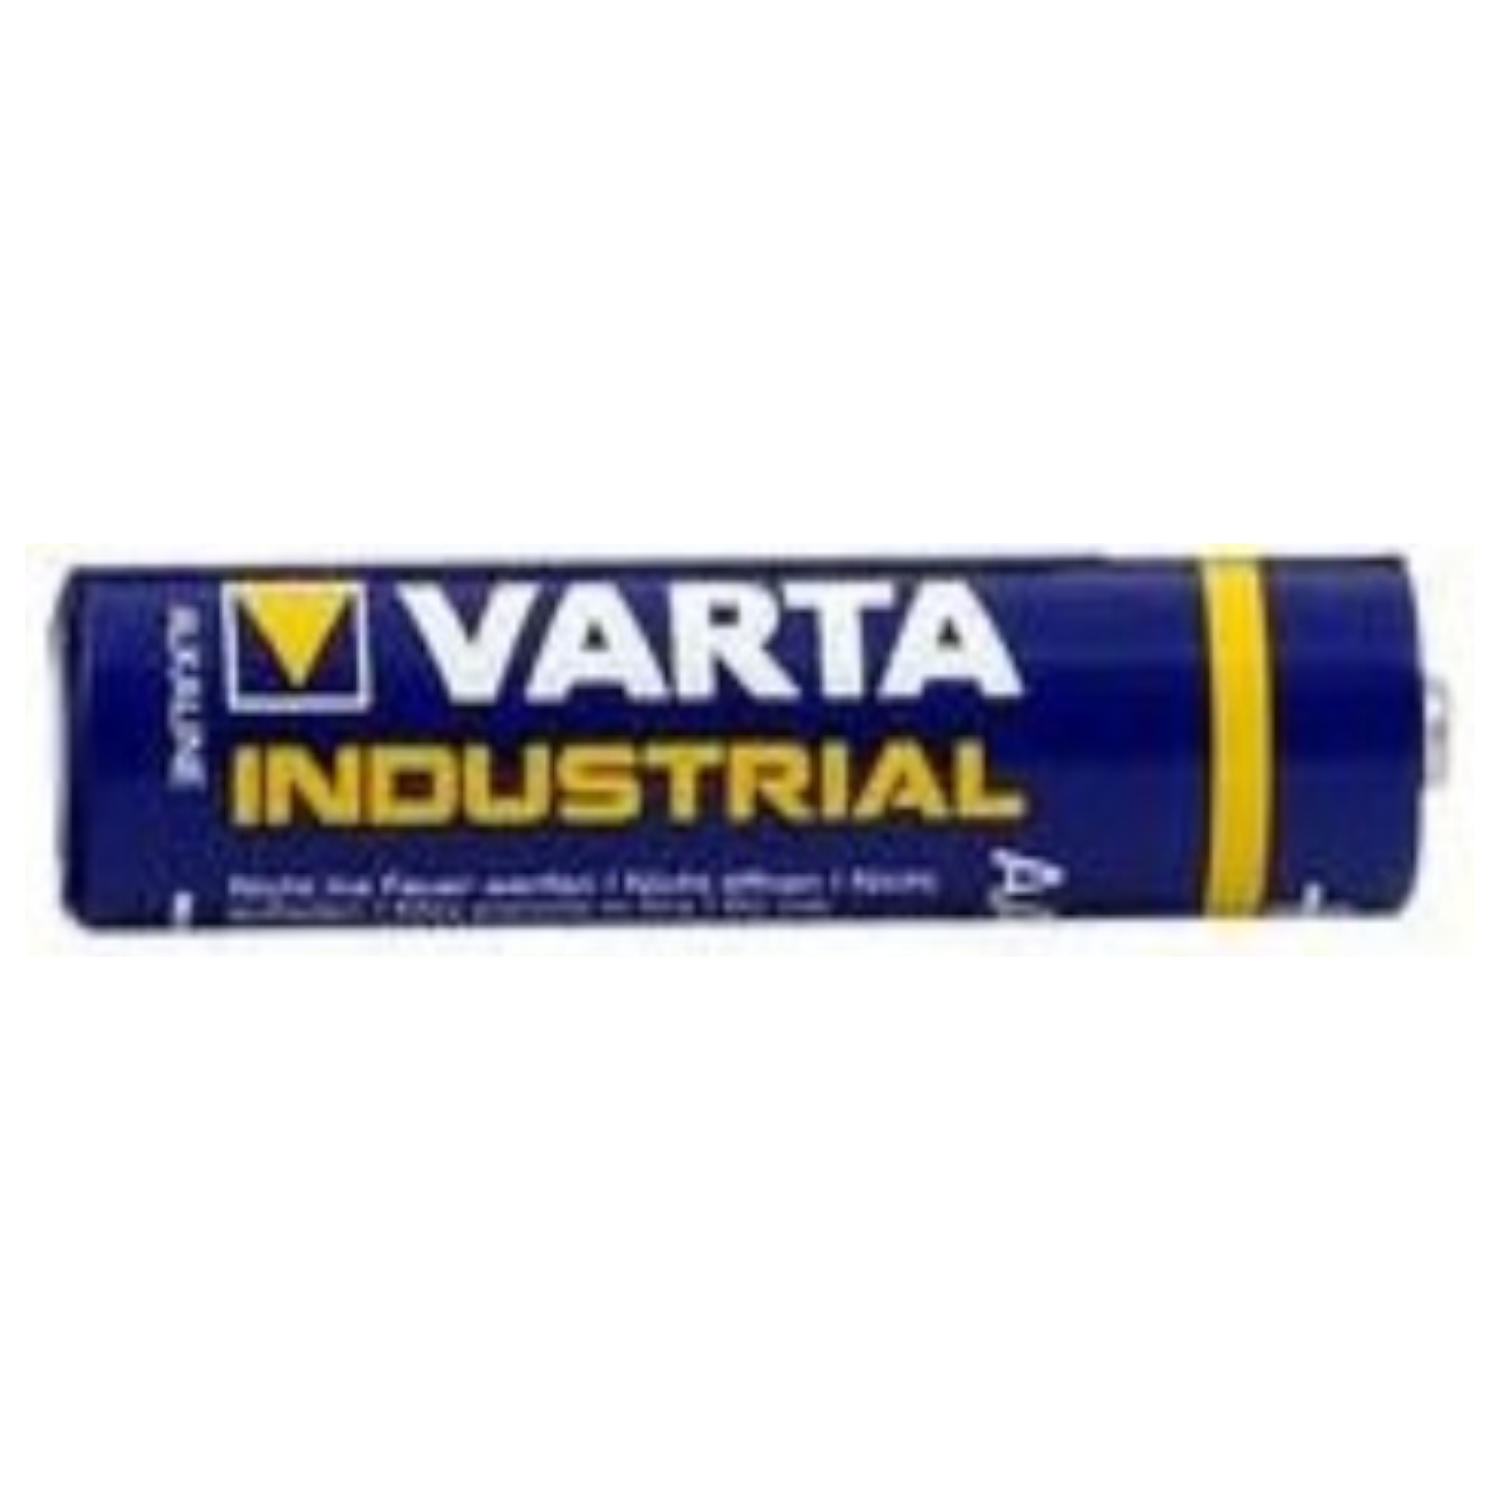 VARTA AAA / LR 03 / Micro 10er Box Alkaline